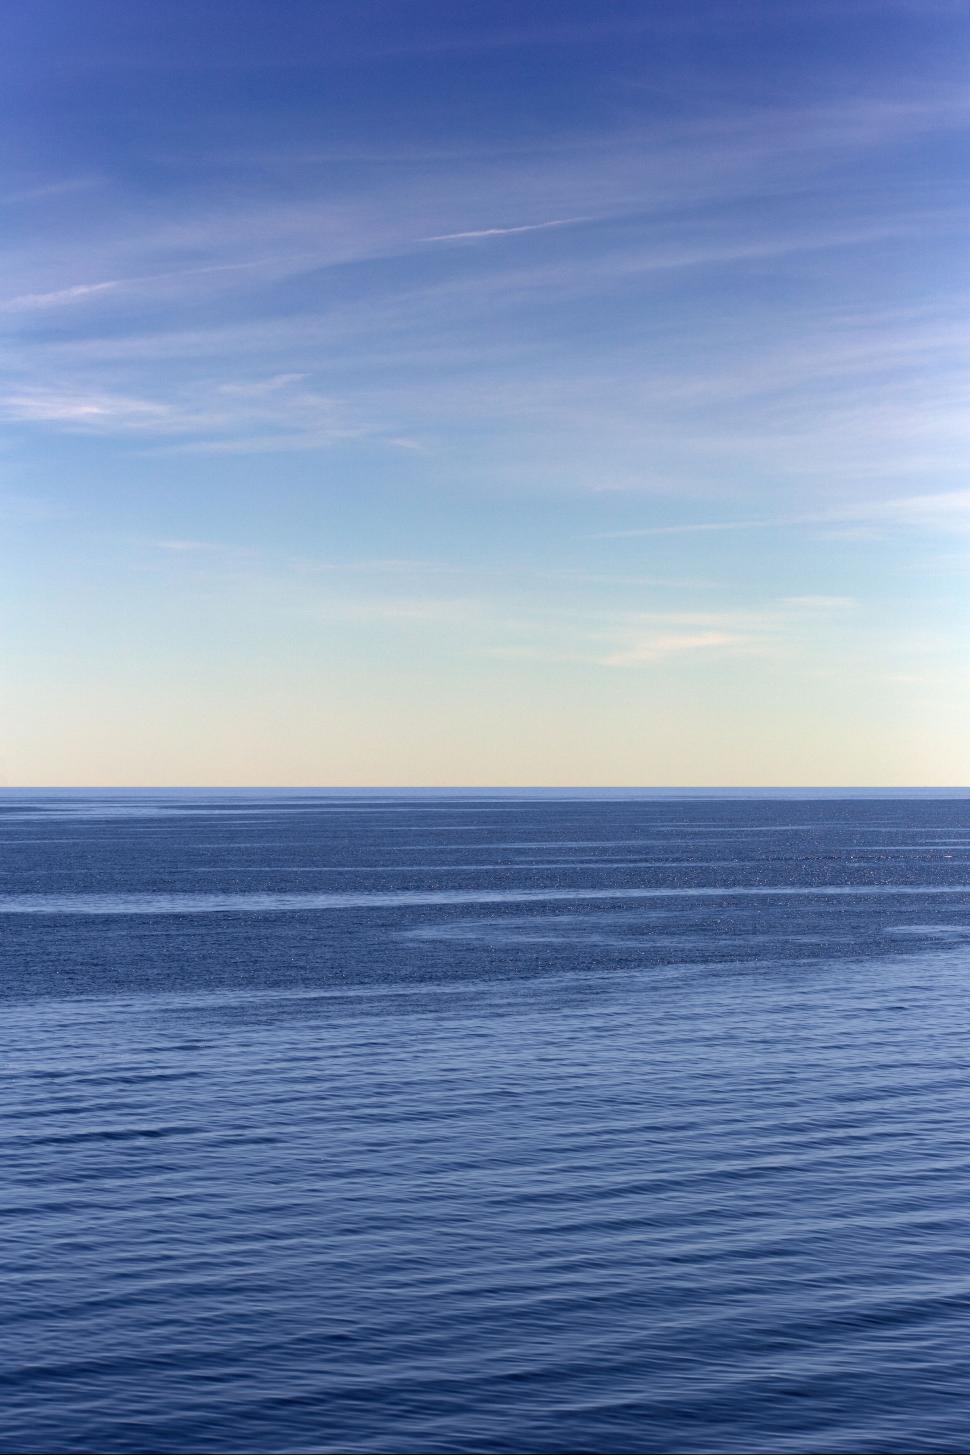 Free Image of Endless ocean horizon at daytime 